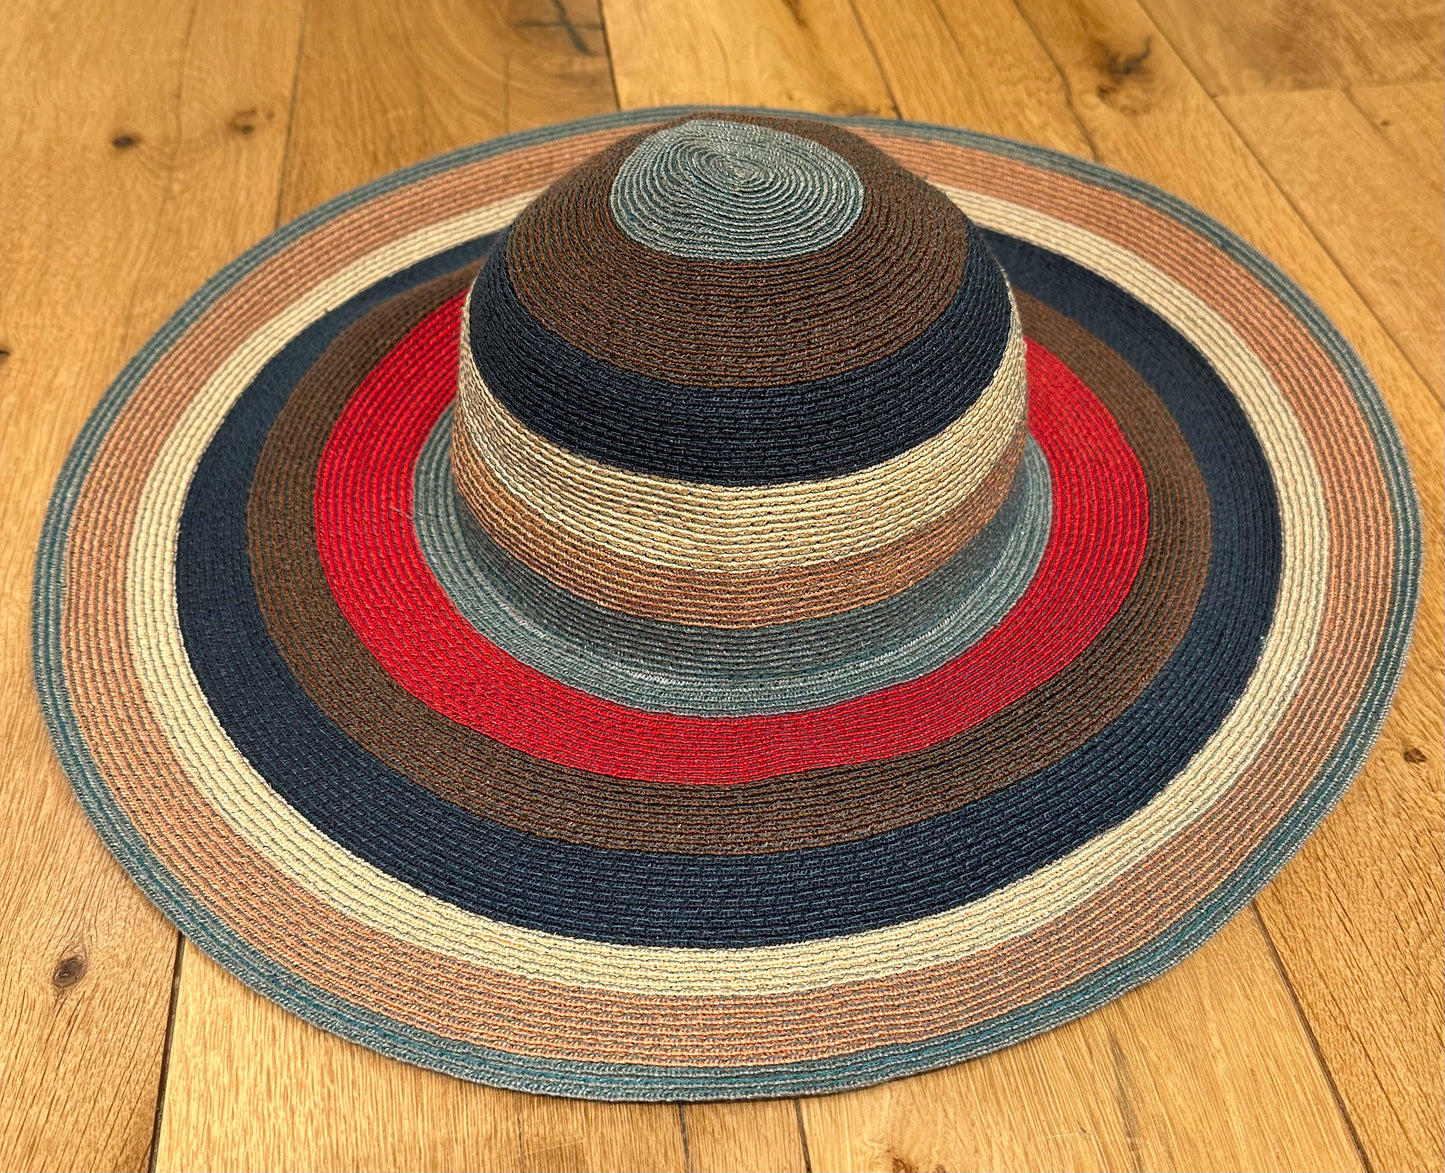 ETRO Hat